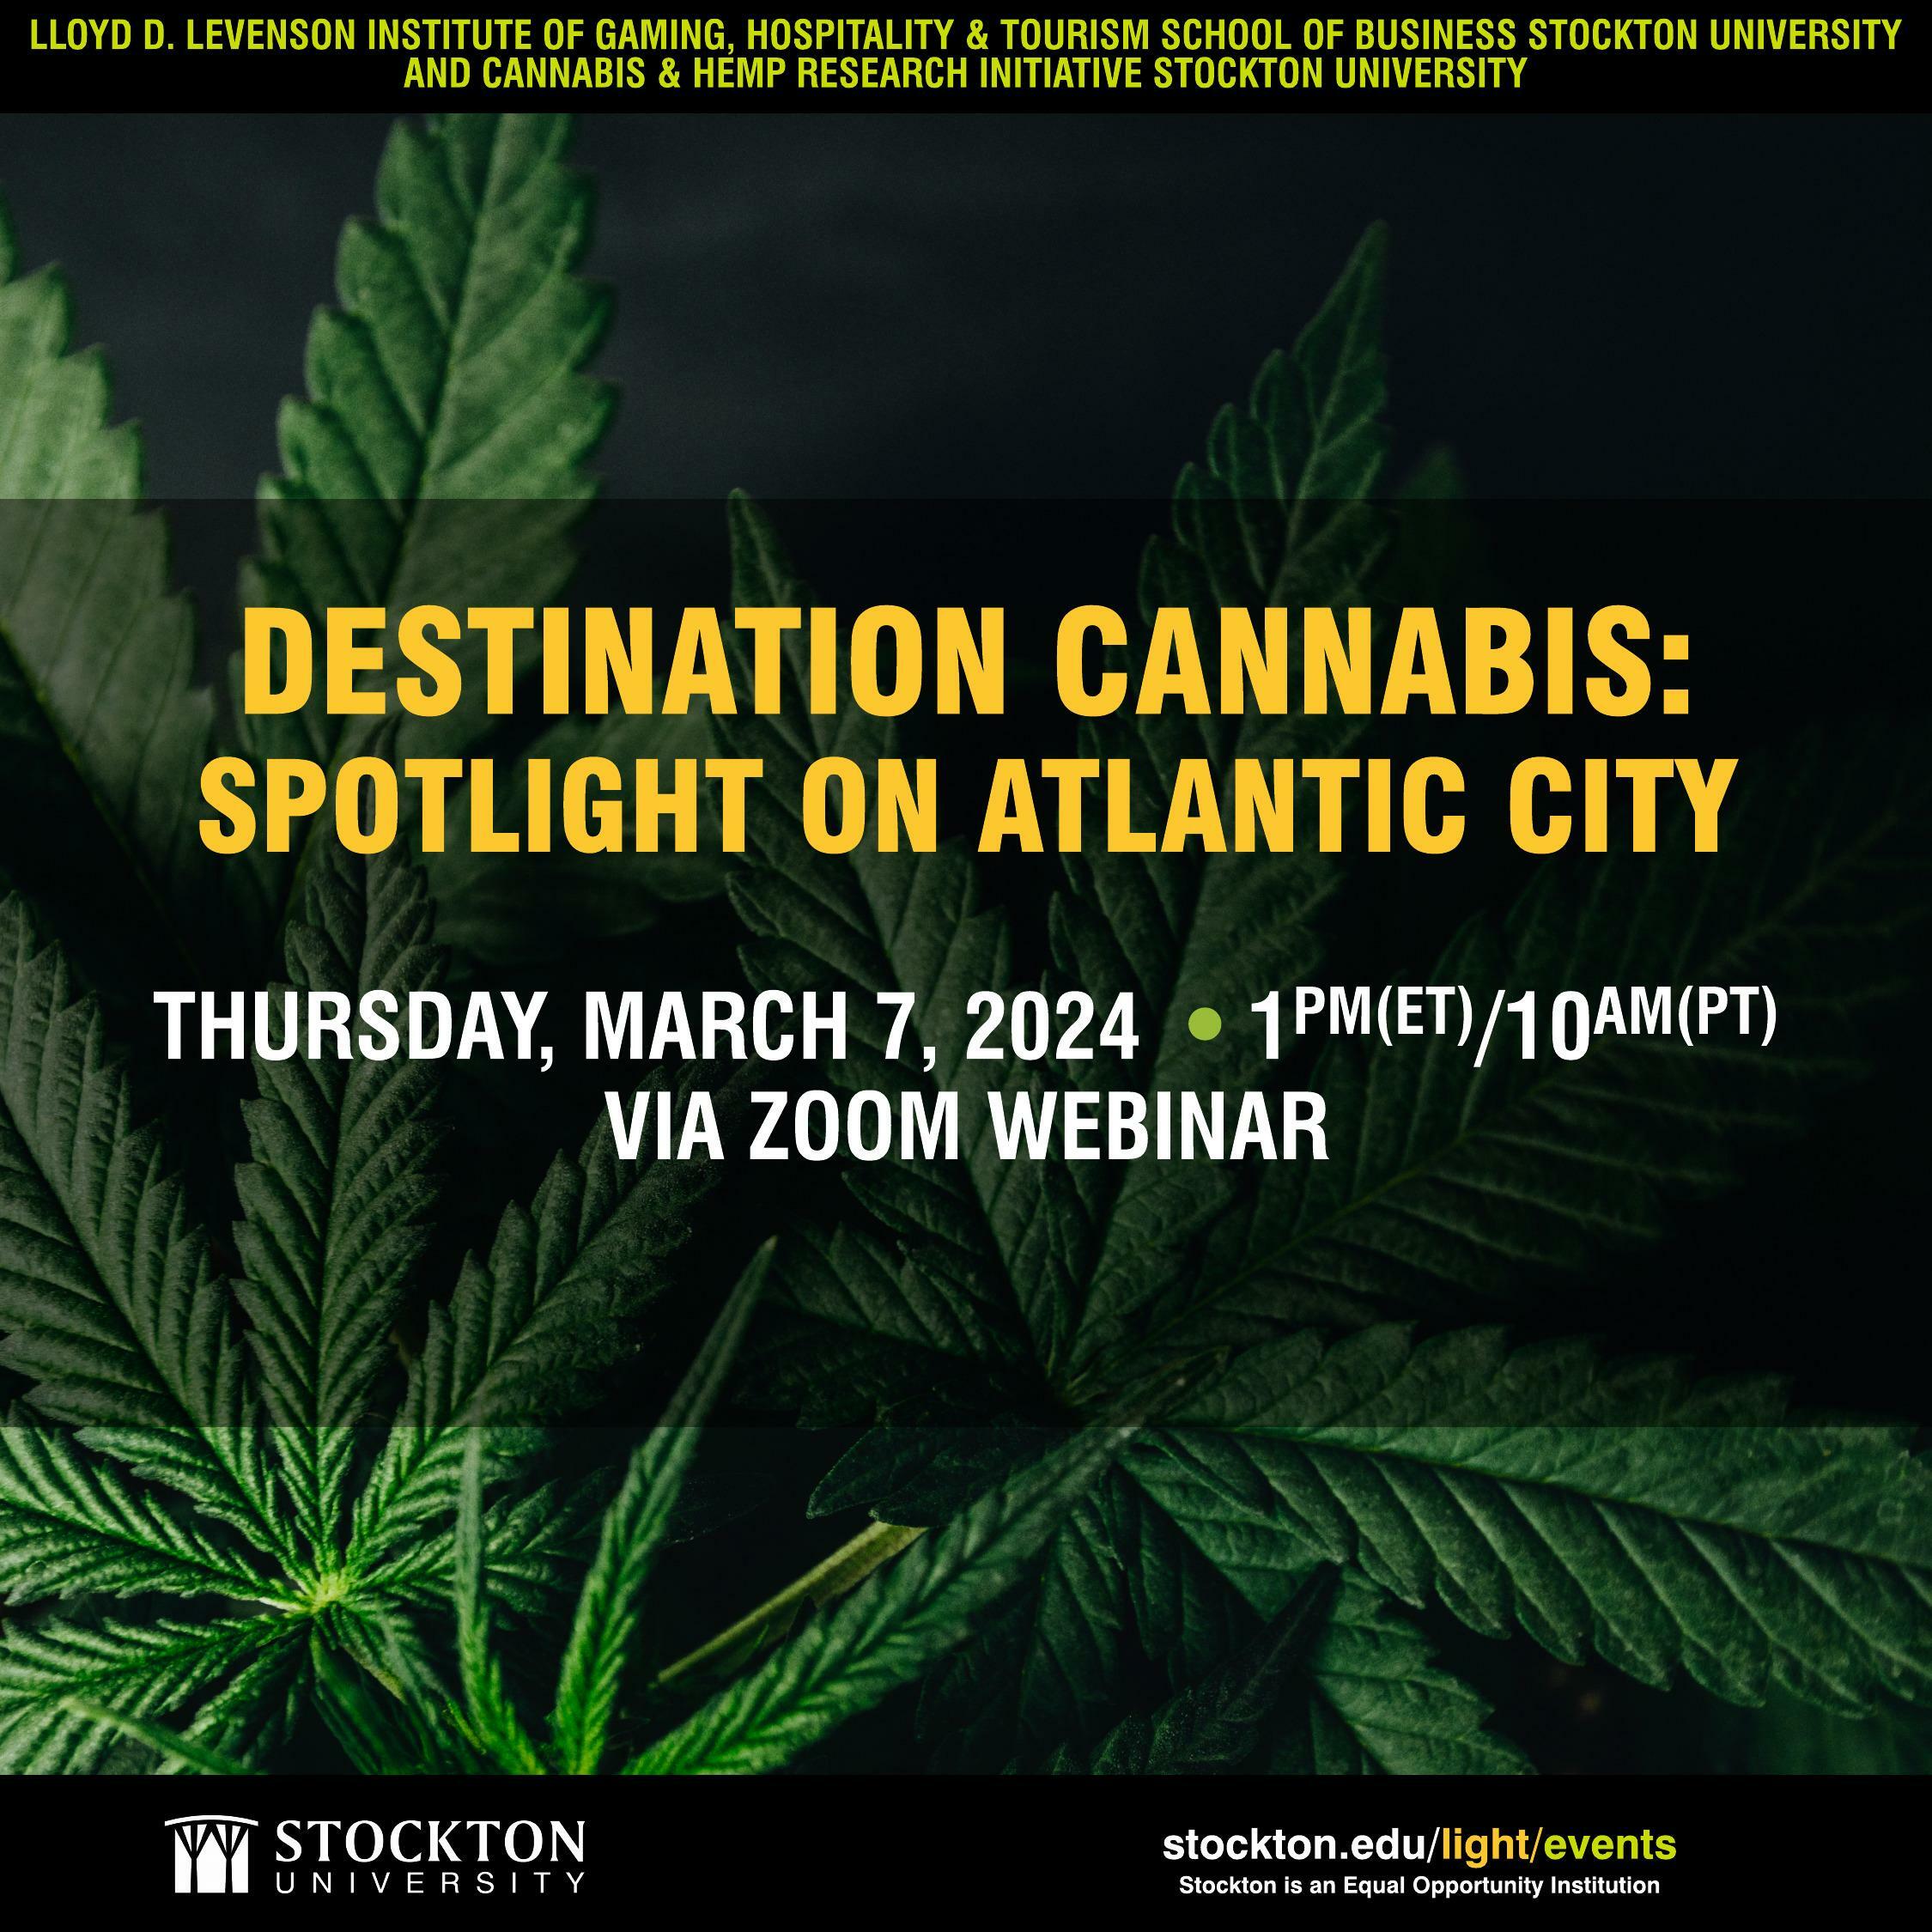 Destination Cannabis Webinar Thursday, March 7, 2024 1PM (ET)